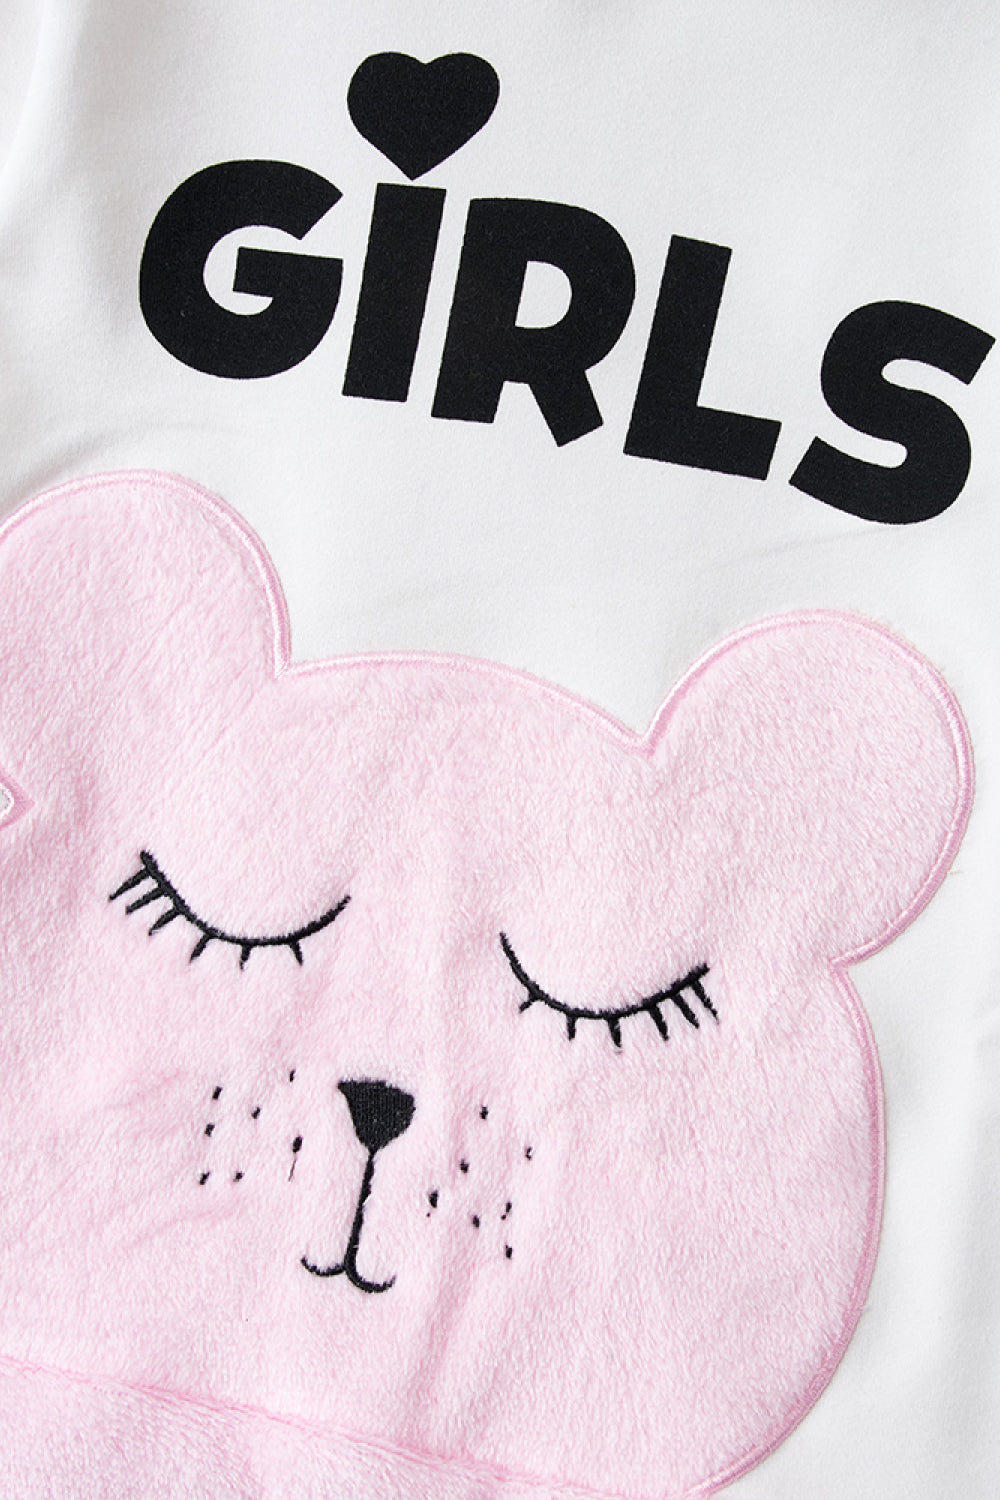 GIRLS Letter Print Bear Graphic Hooded Dress